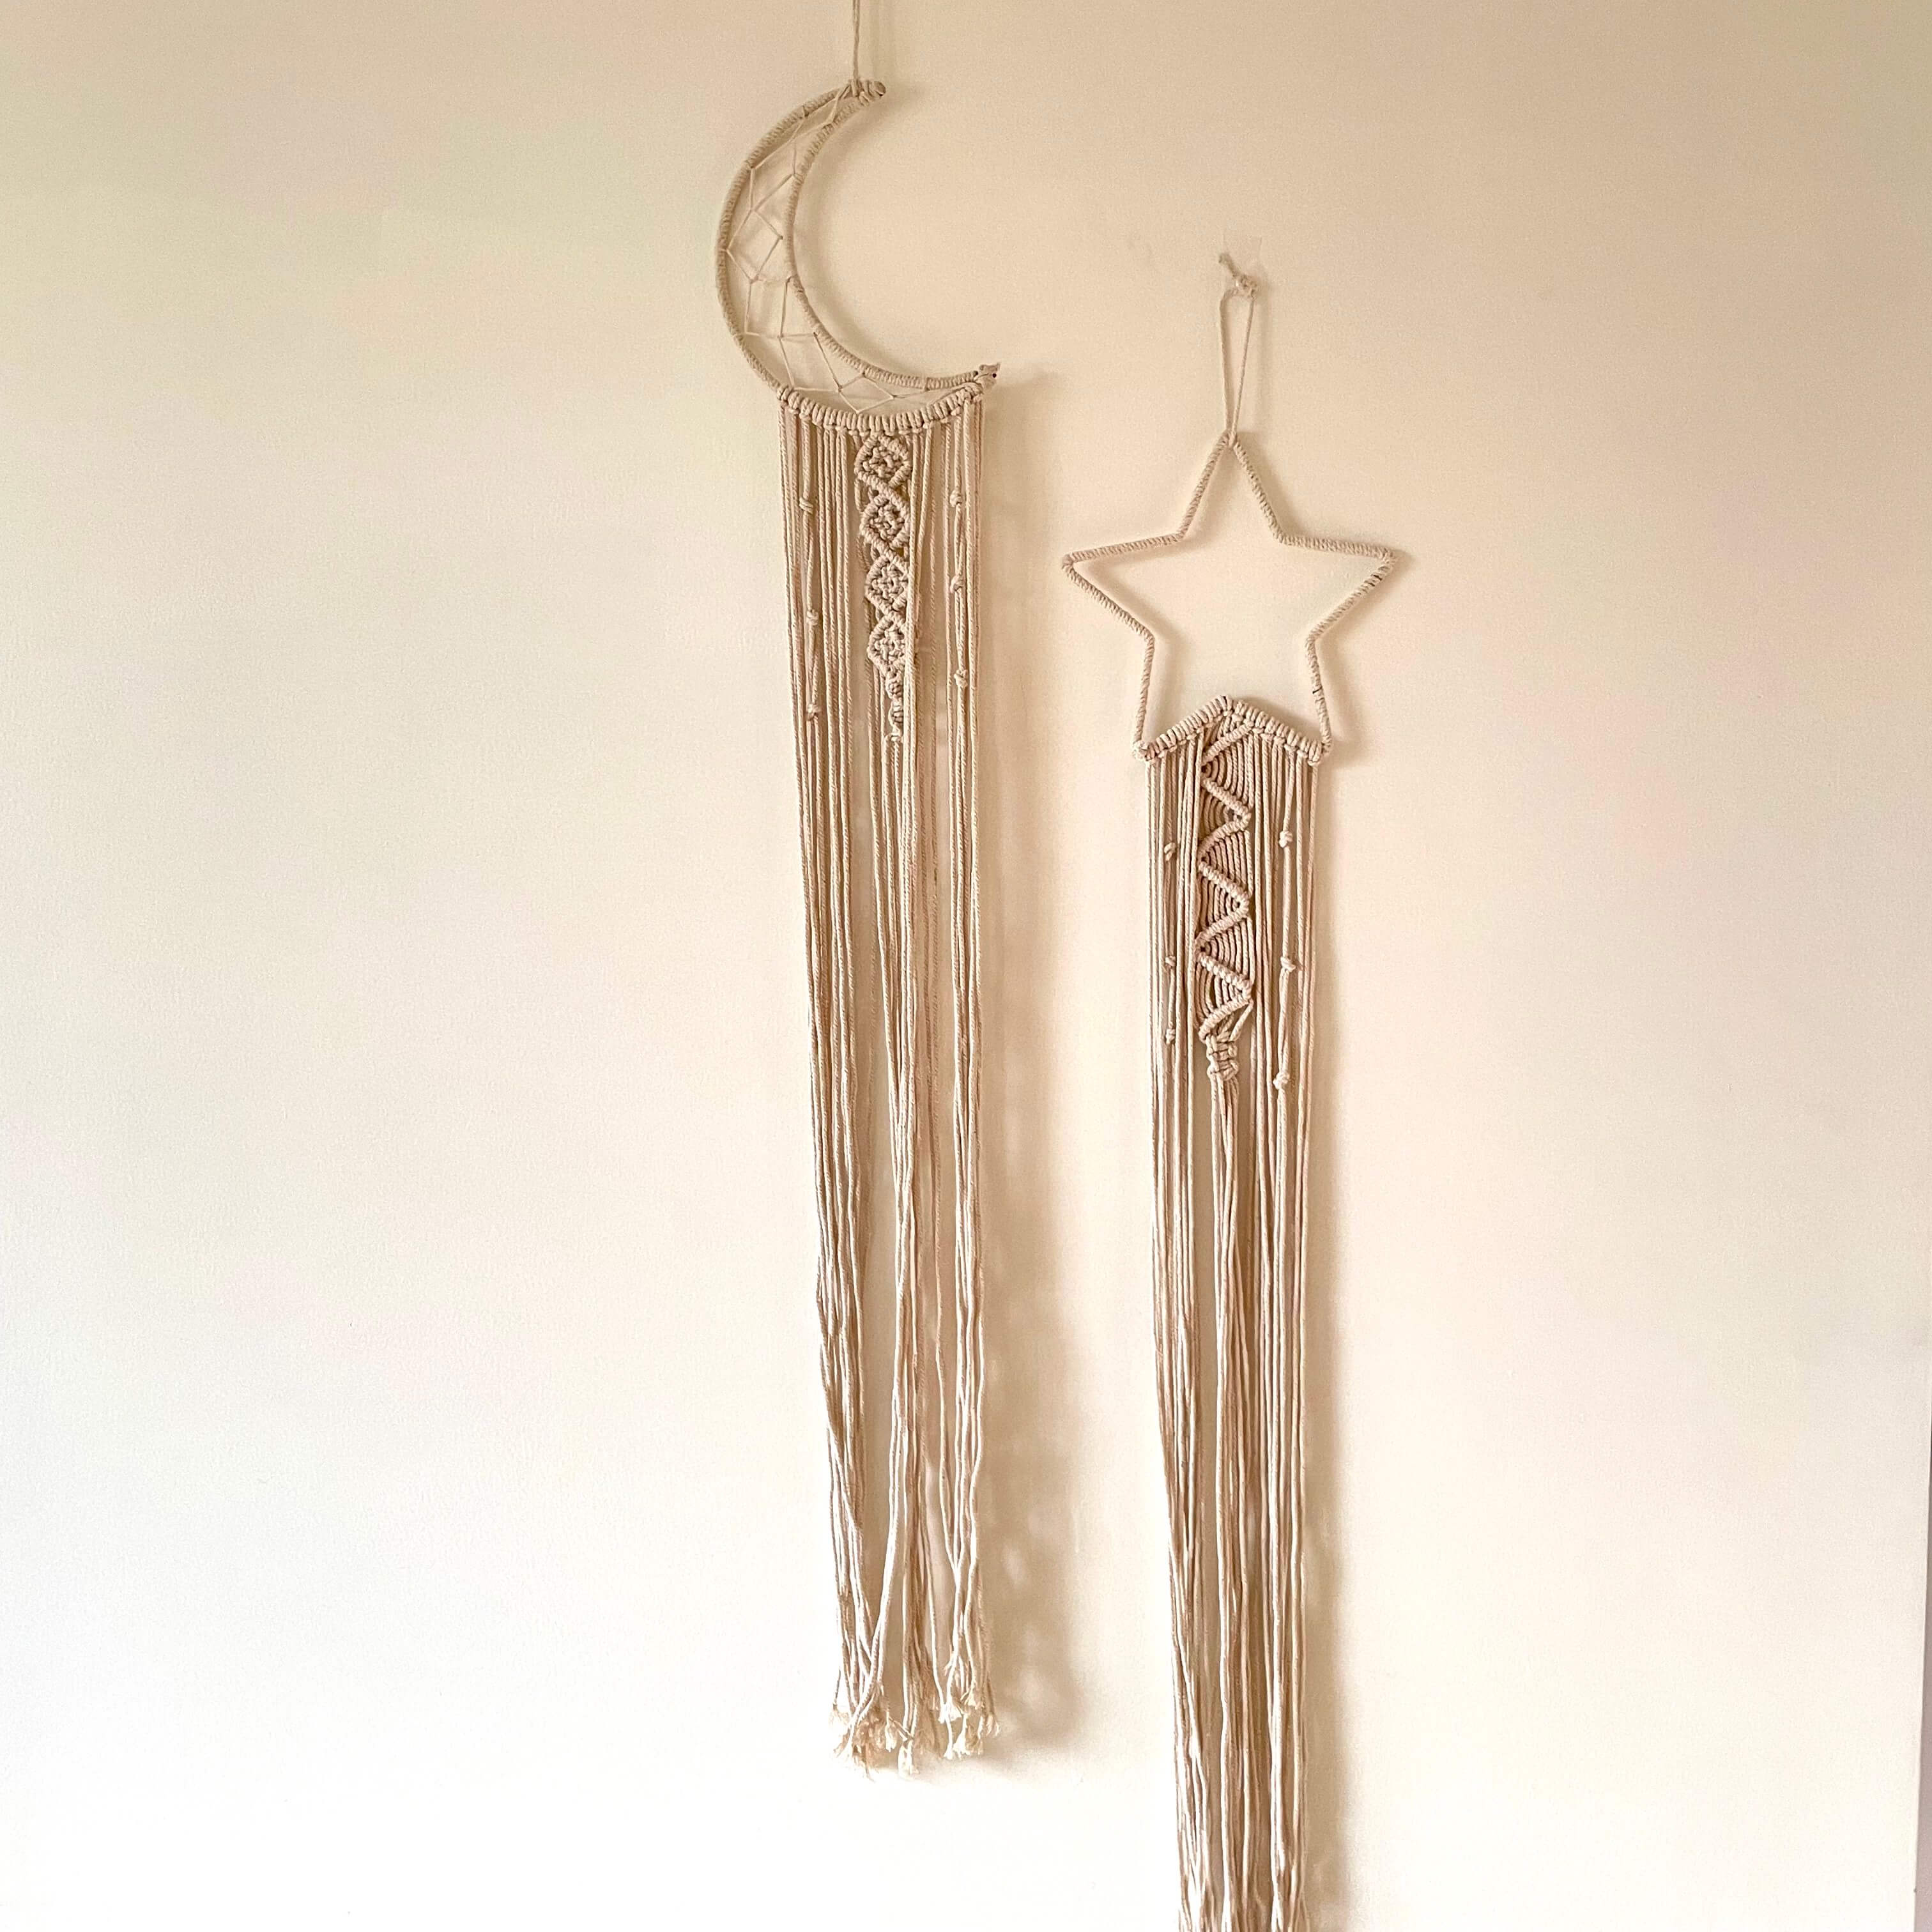 Macrame Star & Moon Dreamcatcher Wall Hanging Set